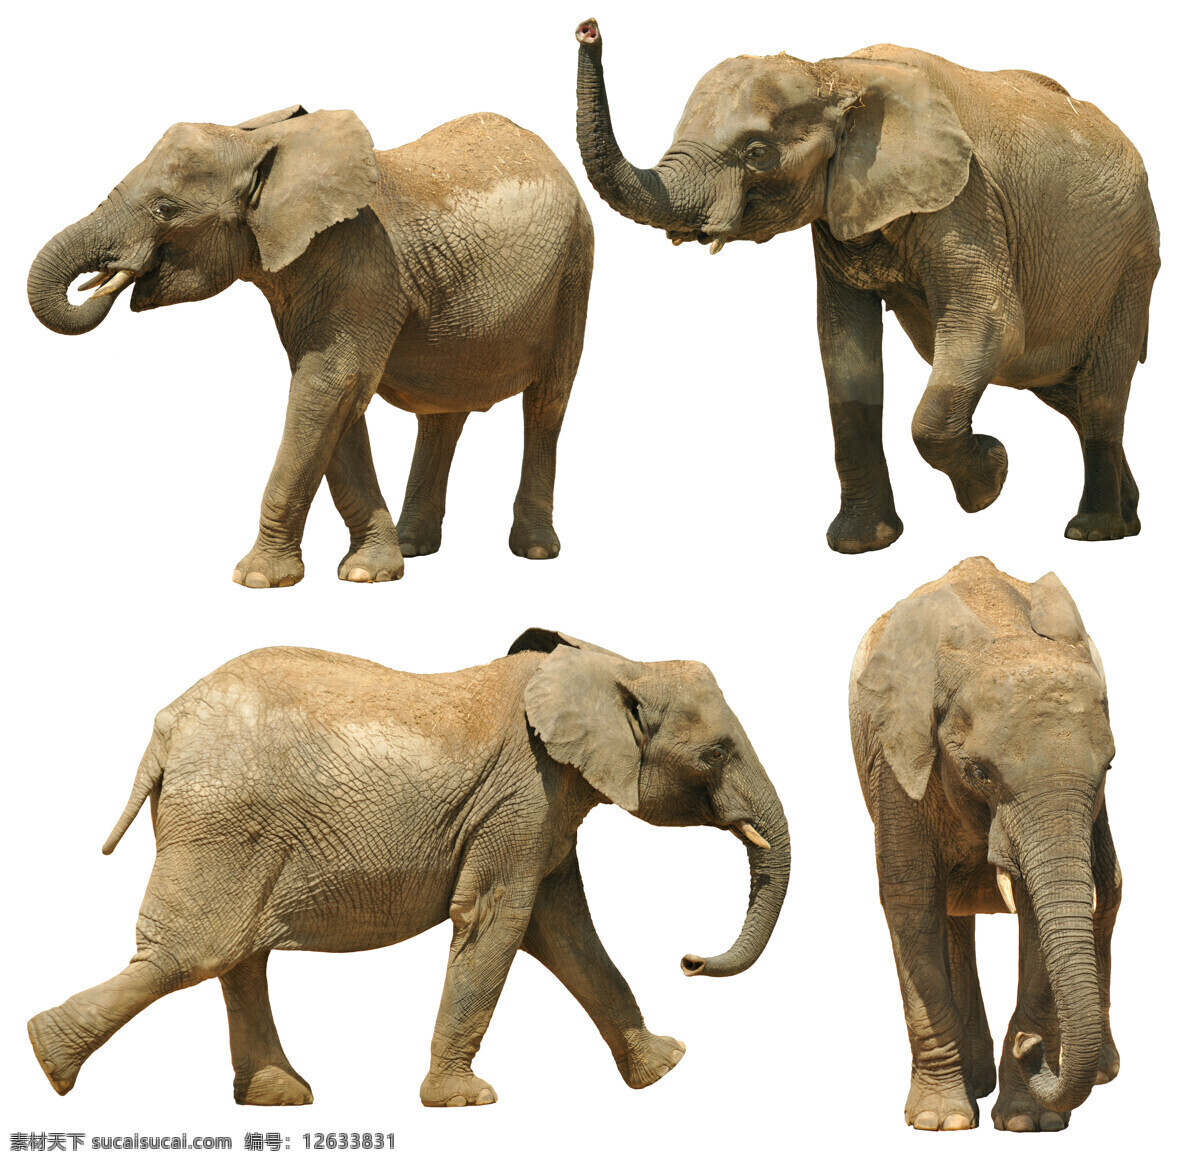 一群 大象 象 野生动物 动物世界 陆地动物 生物世界